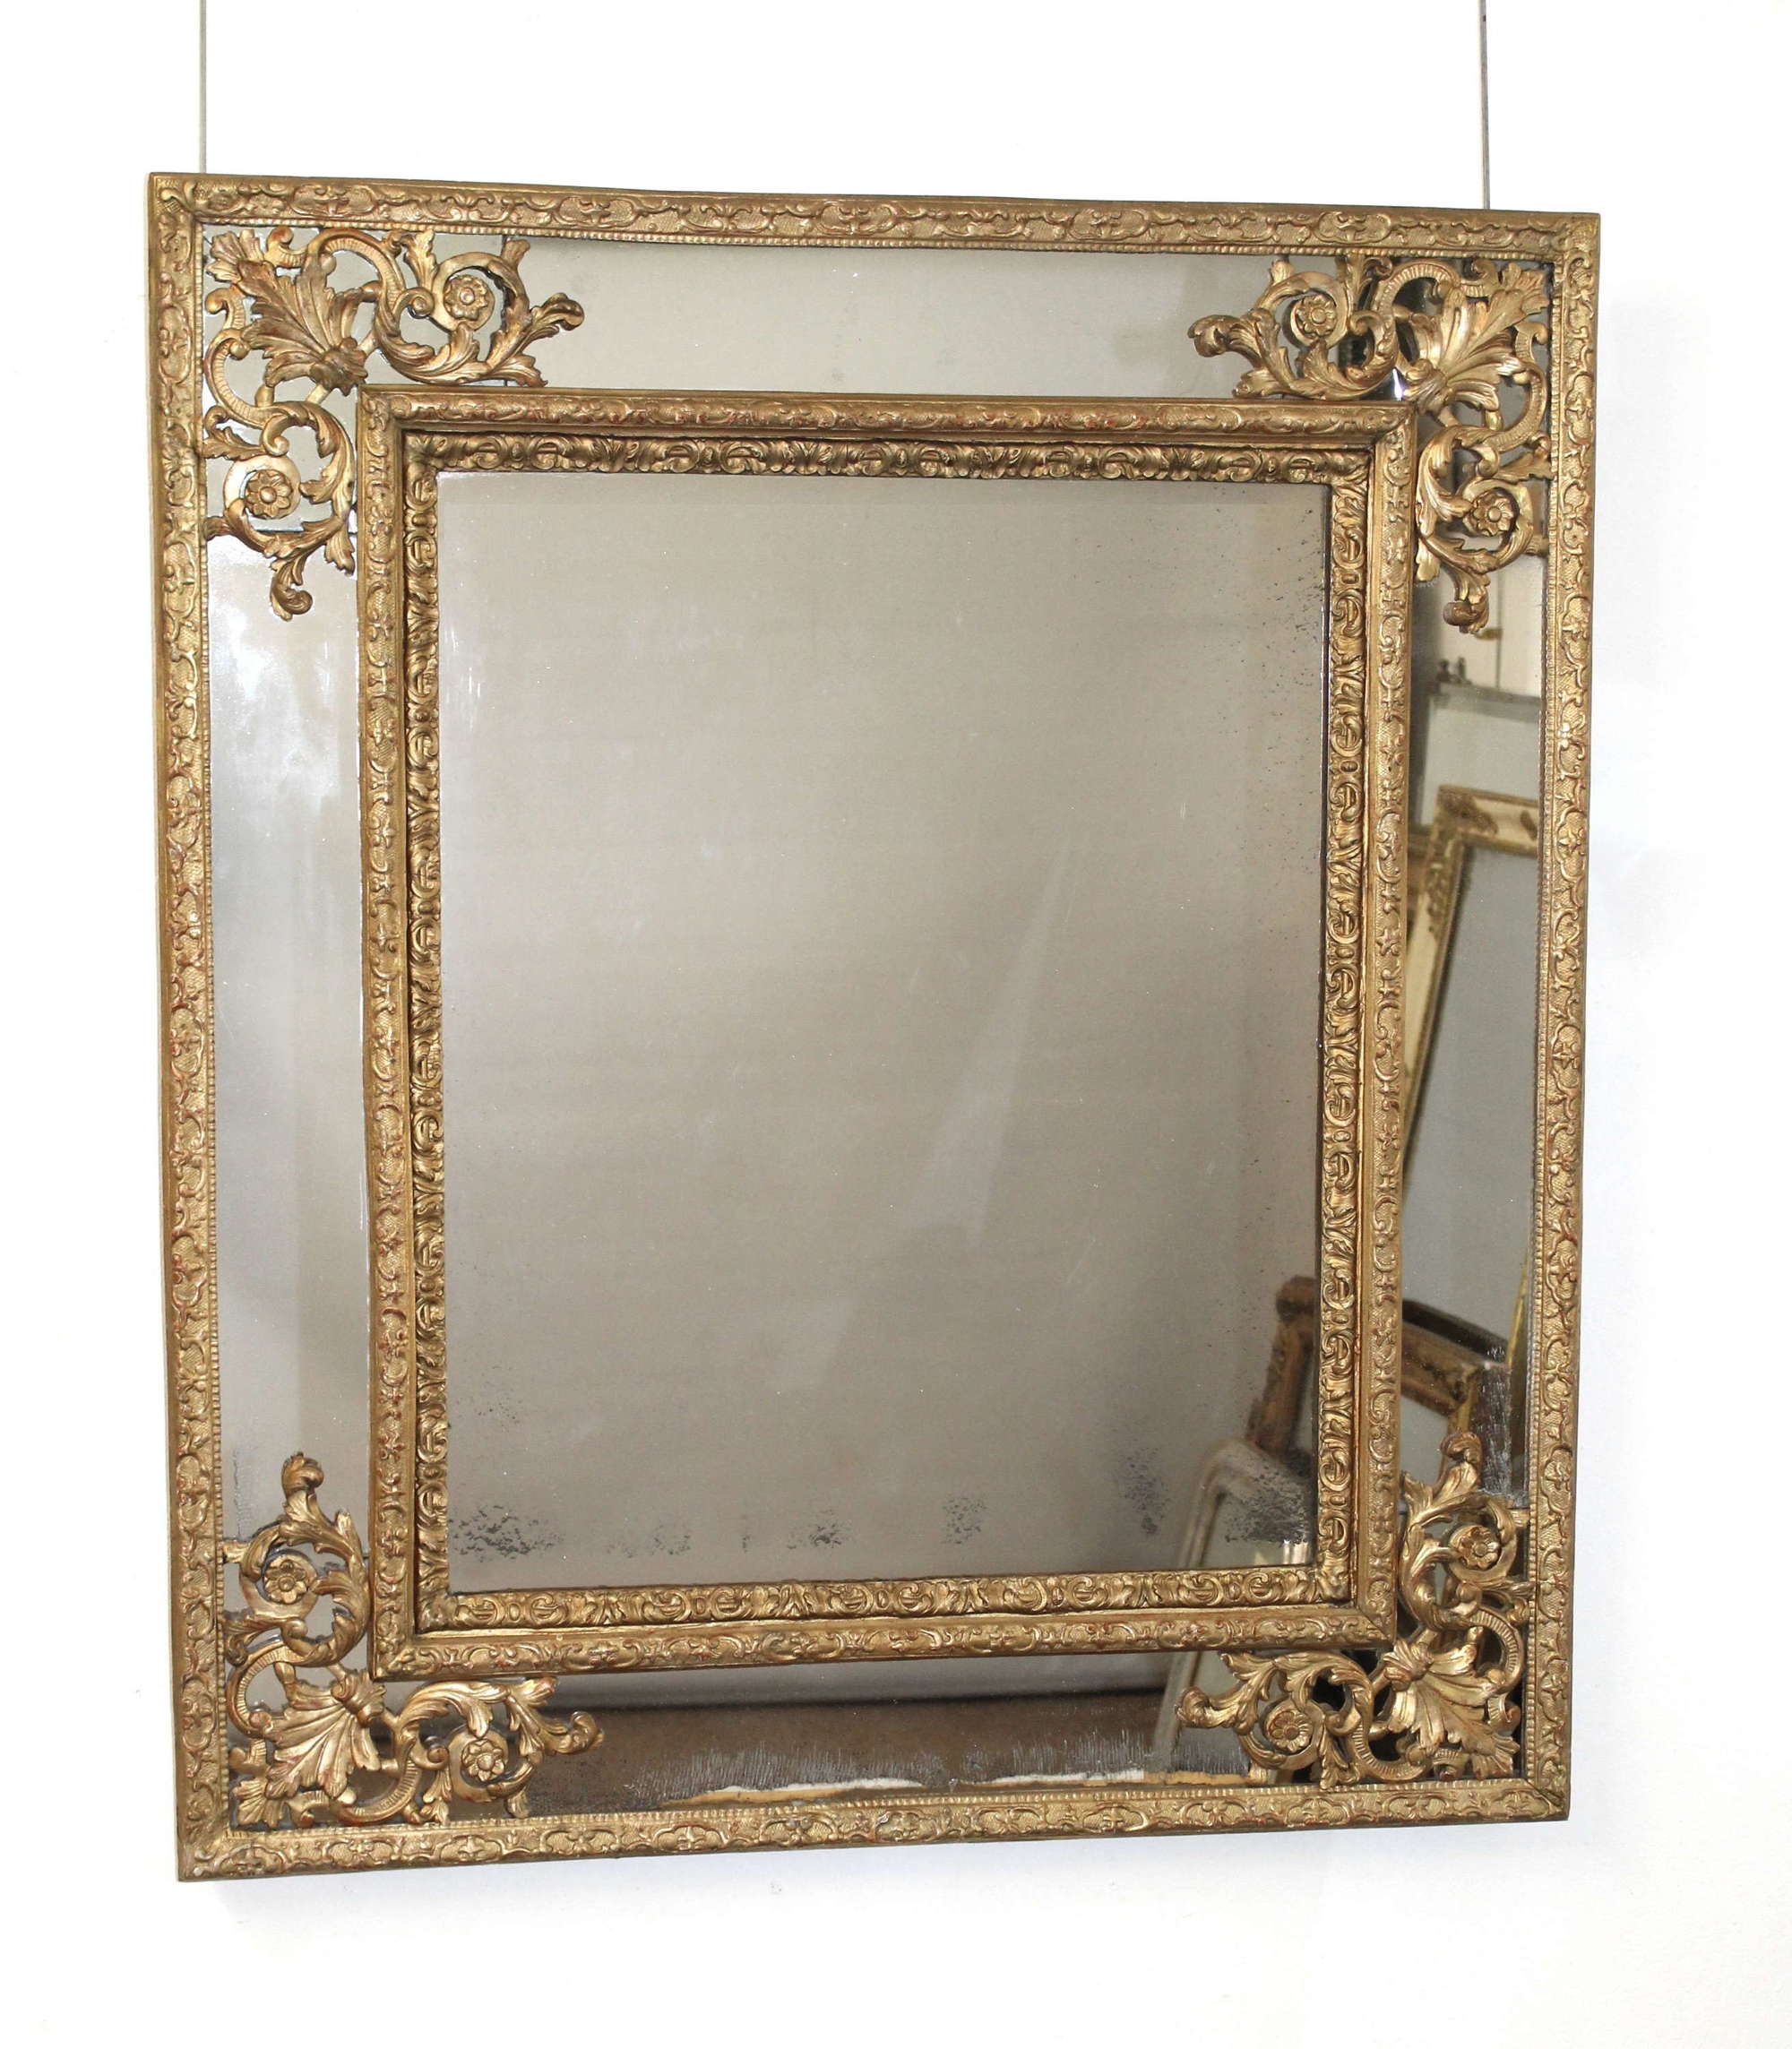 18th century French giltwood margin mirror